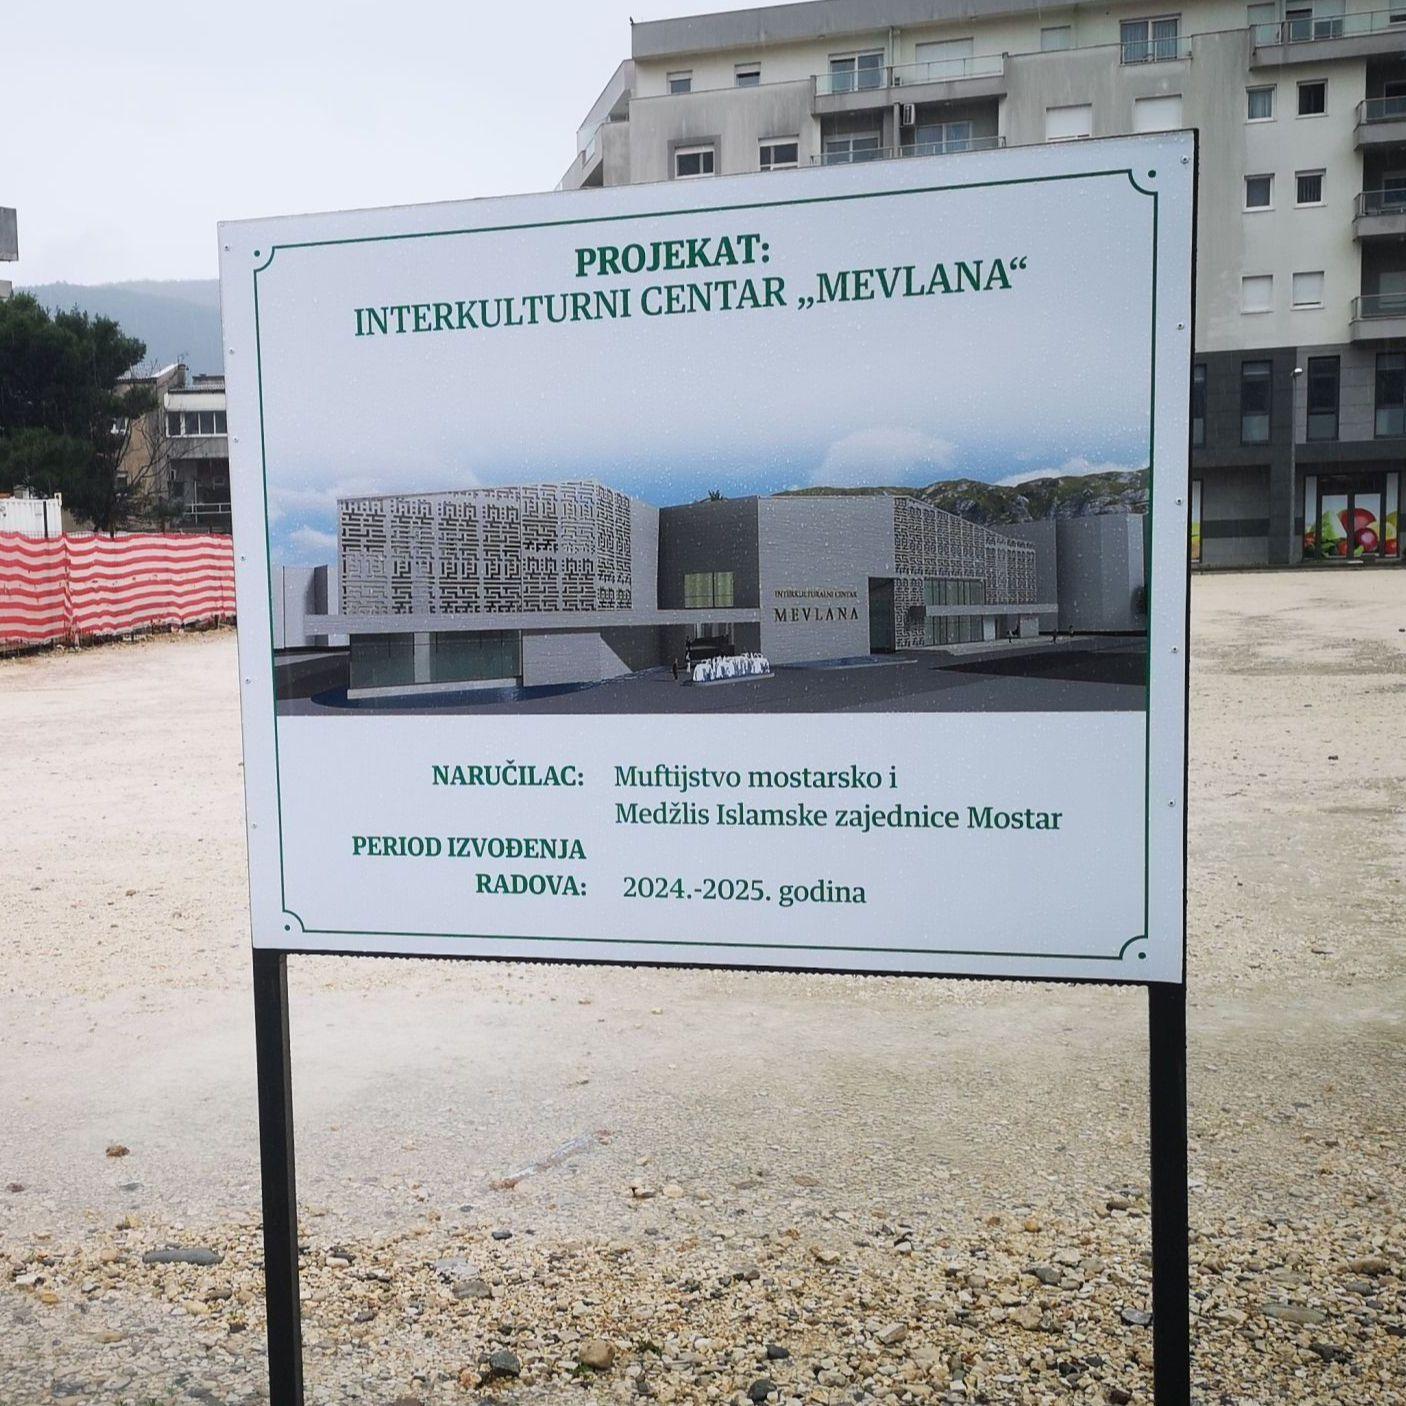 Kompromisno rješenje: Umjesto islamskog centra u Mostaru će se graditi Interkulturni centar "Mevlana"